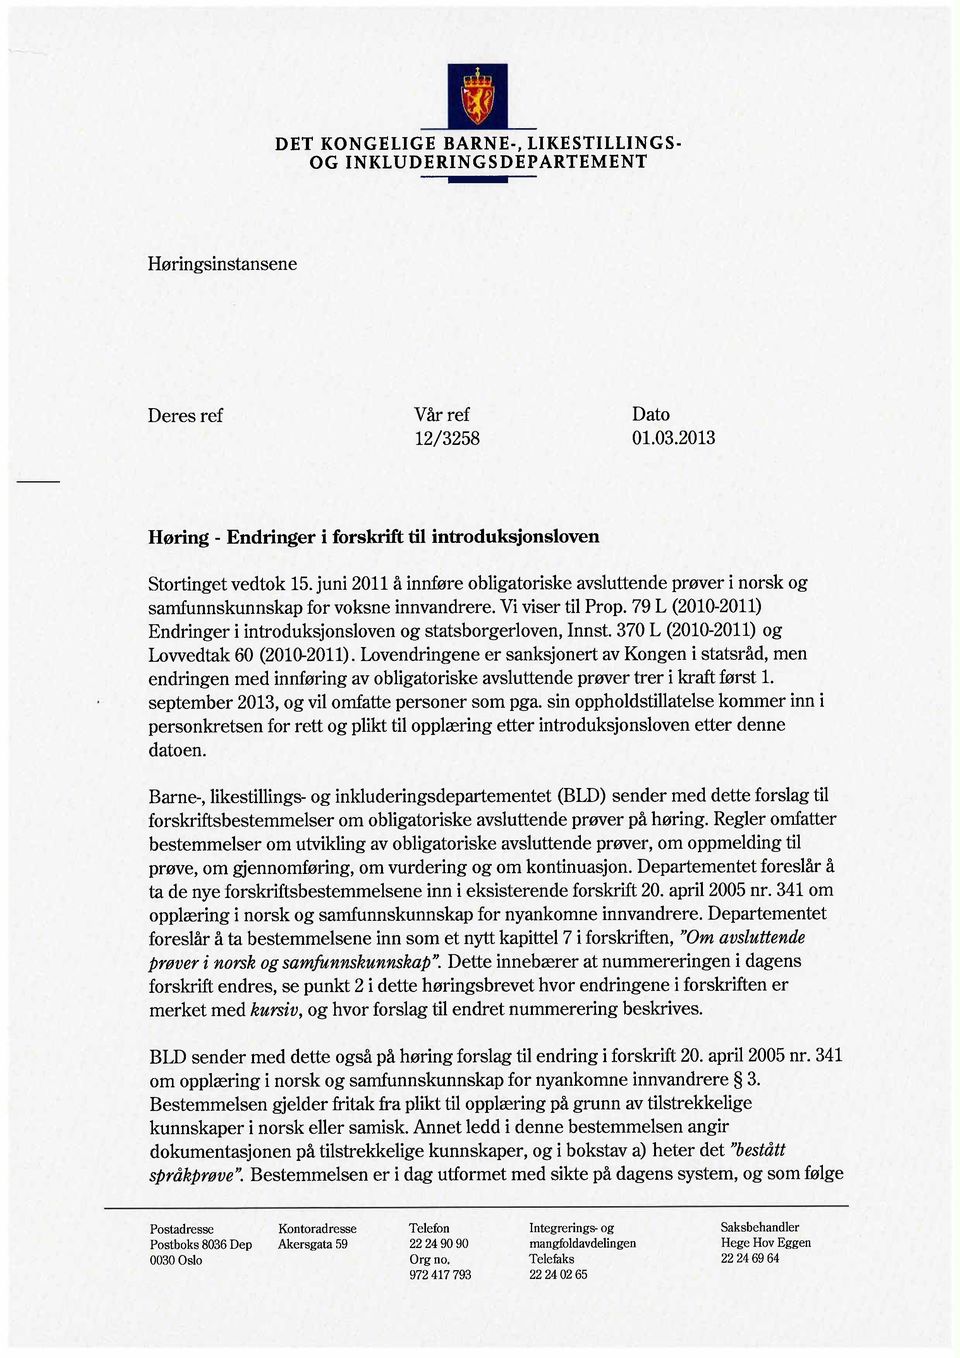 79 L (2010-2011) Endringer i introduksjonsloven og statsborgerloven, Innst. 370 L (2010-2011) og Lovvedtak 60 (2010-2011).